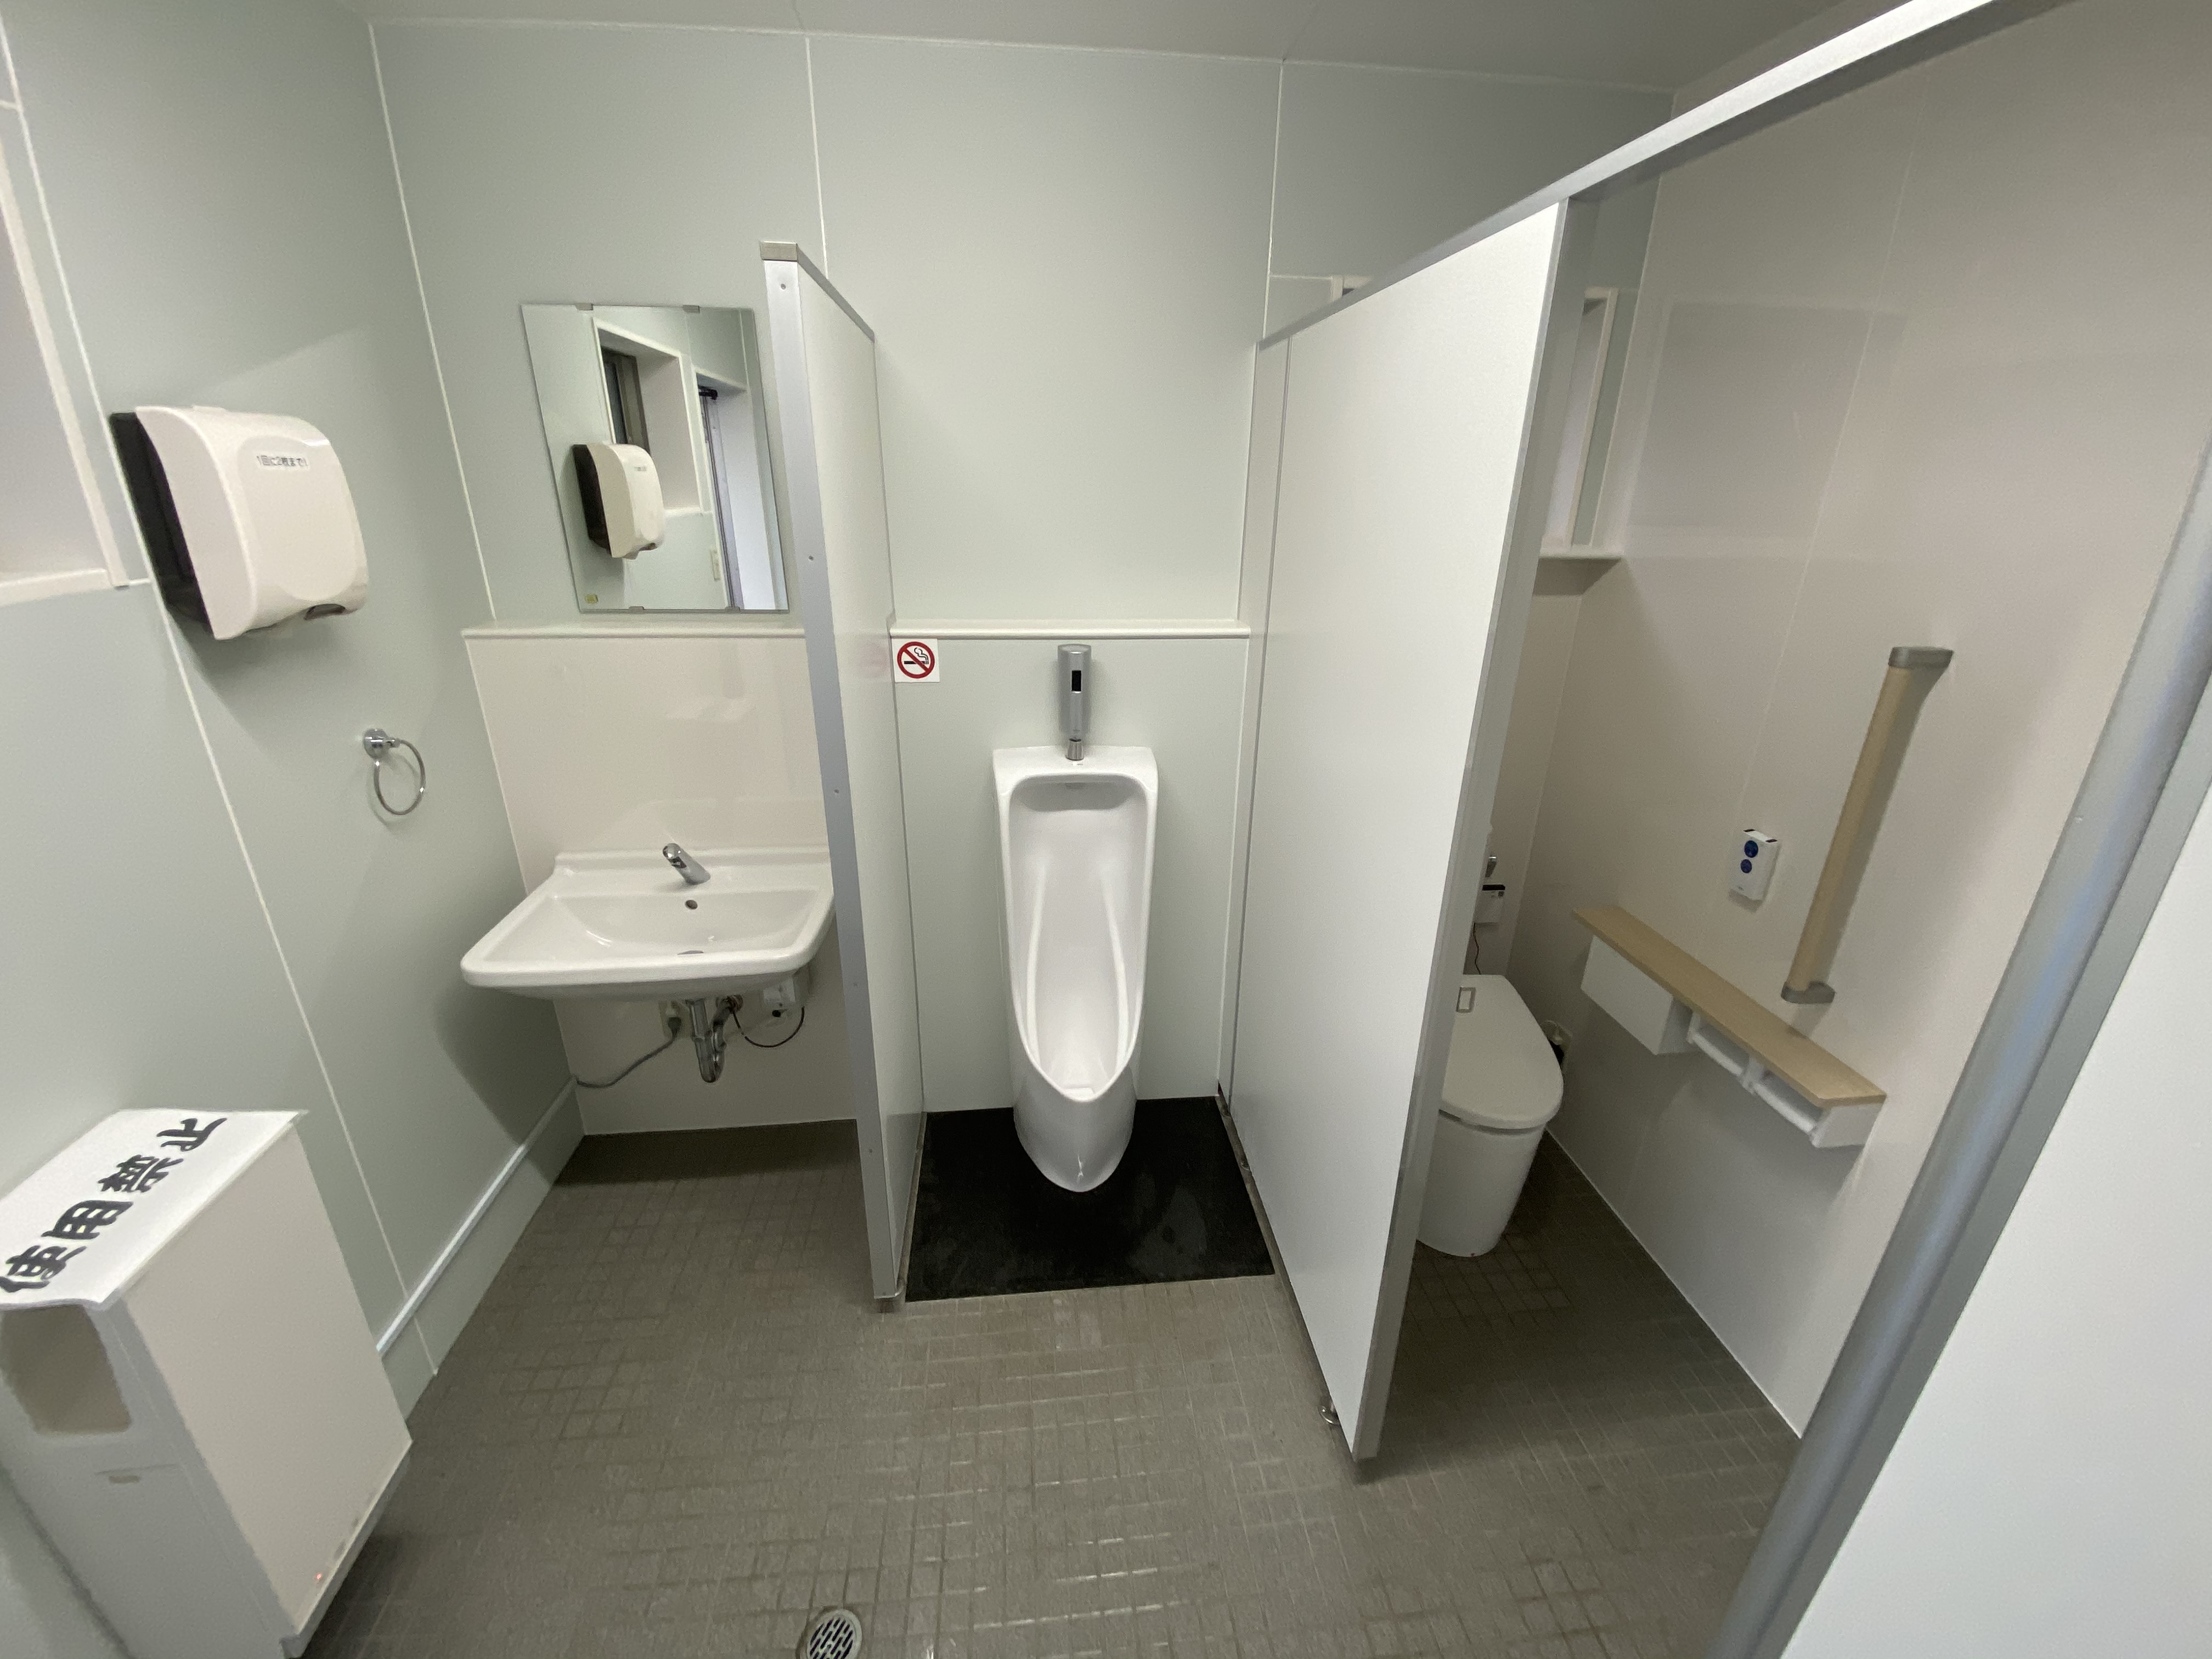 事務所トイレ改修工事 神戸市西区のリフォーム・リノベーションなら あきよし建築工房